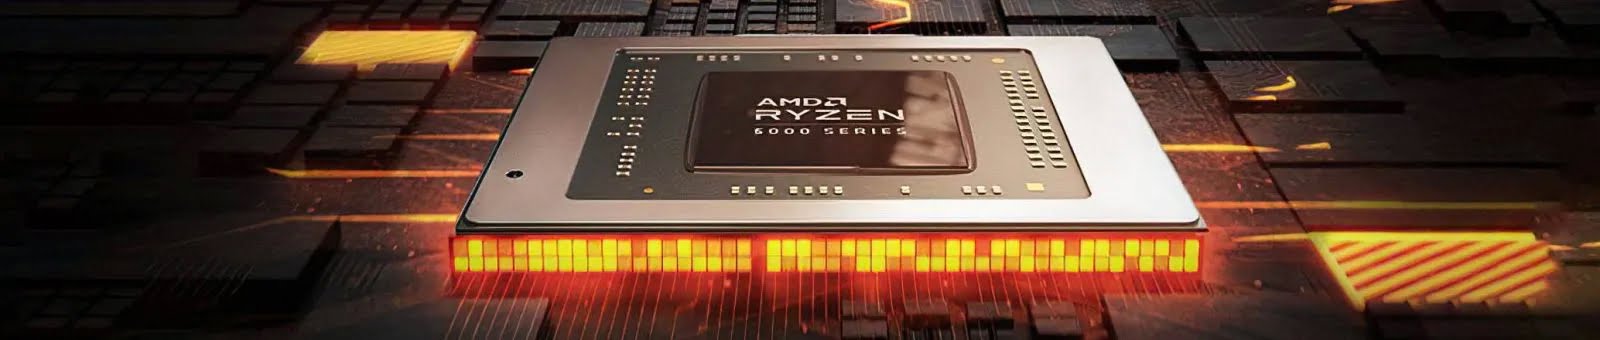 AMD chuẩn bị tung ra đến 10 vi xử lý trong tháng 4/2022 - Image 1